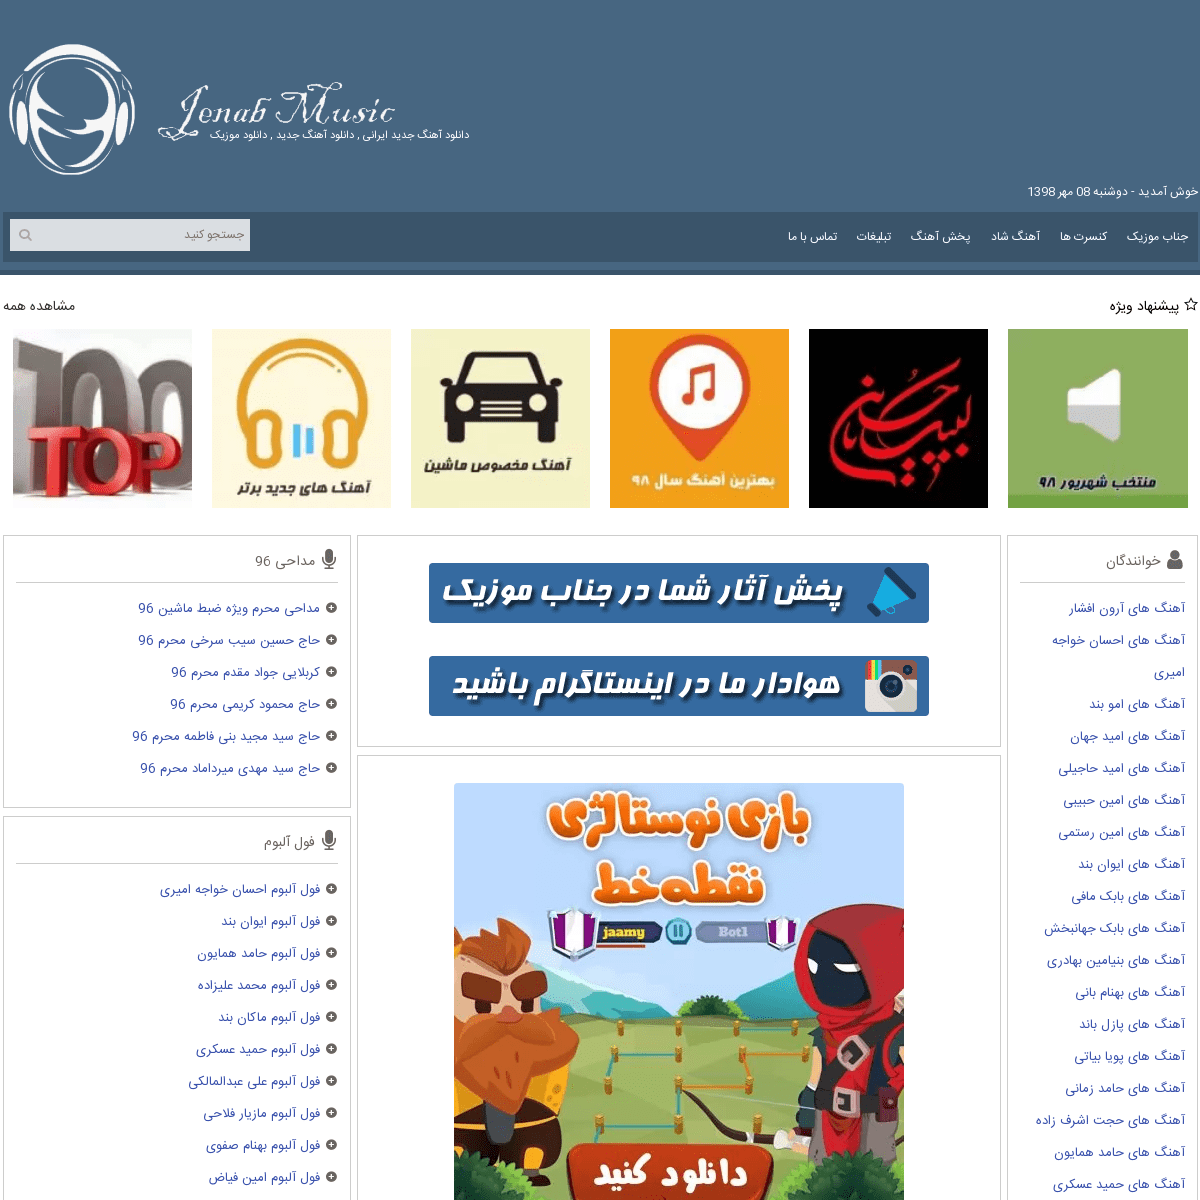 دانلود آهنگ جدید ایرانی 98 - 2019 / جناب موزیک